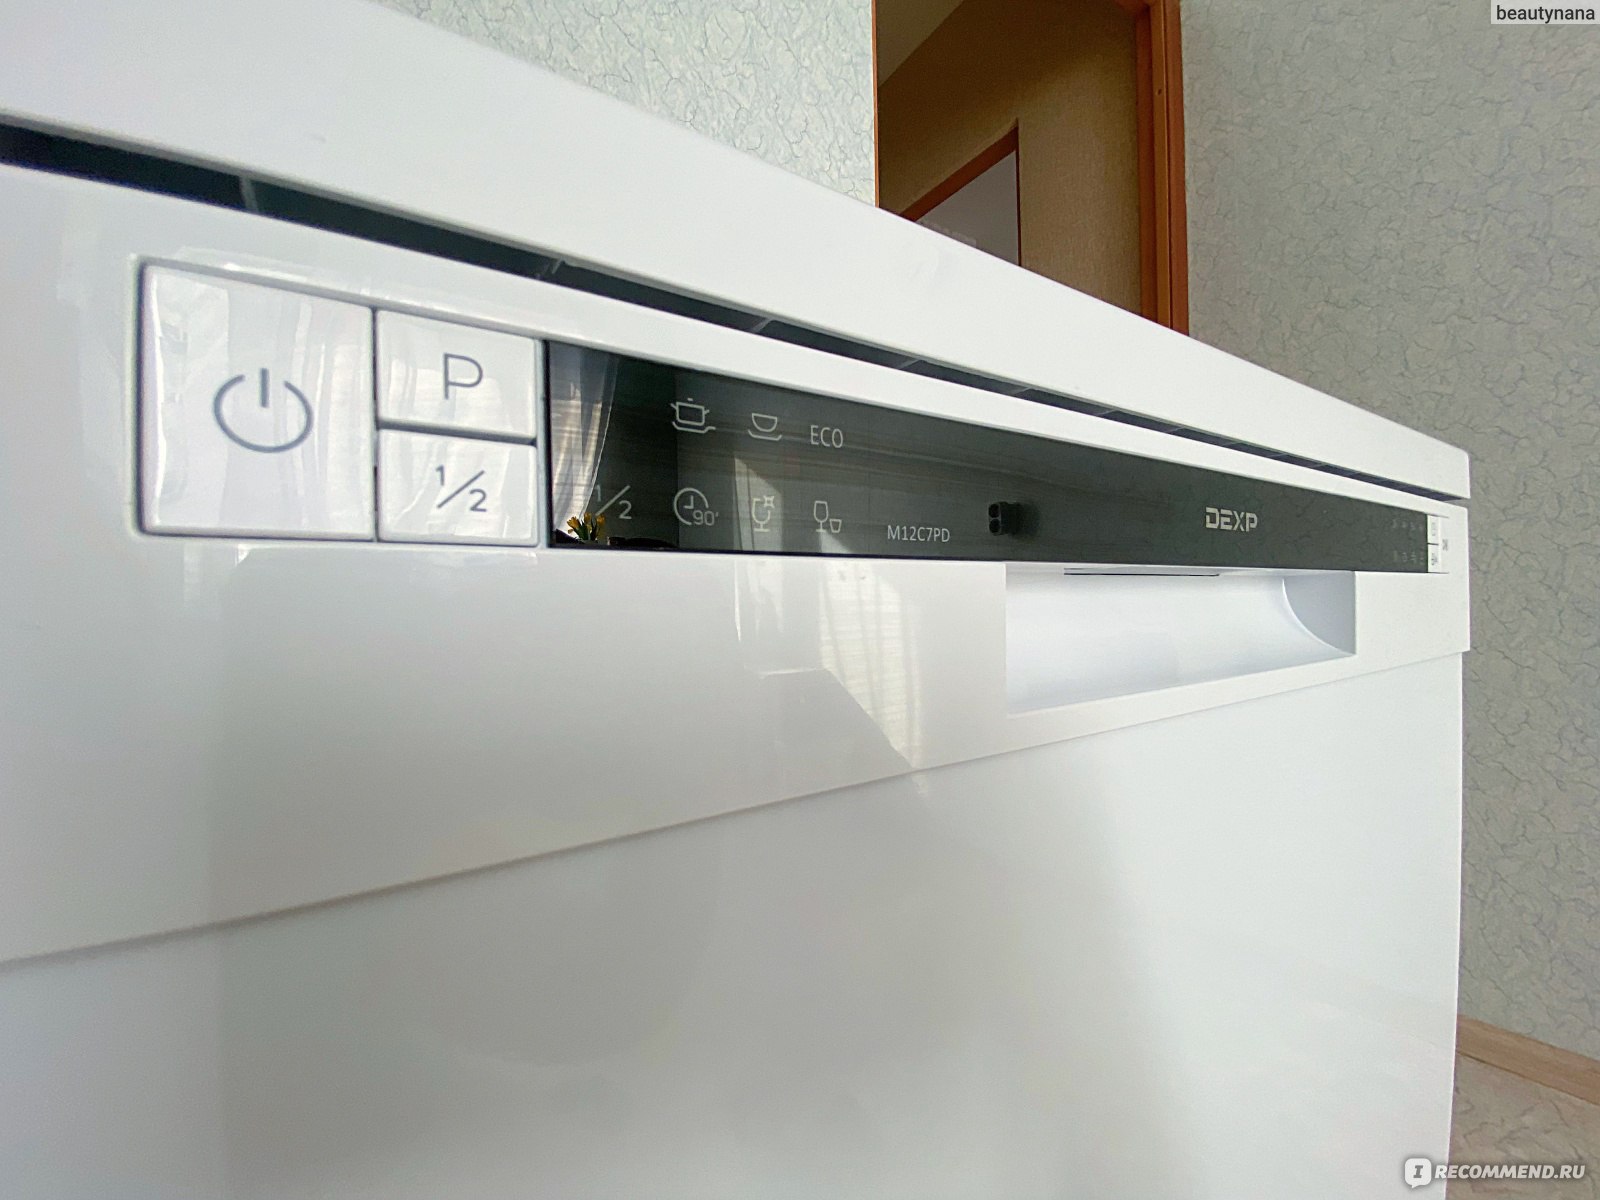  Посудомоечная машина DEXP M12C7PD